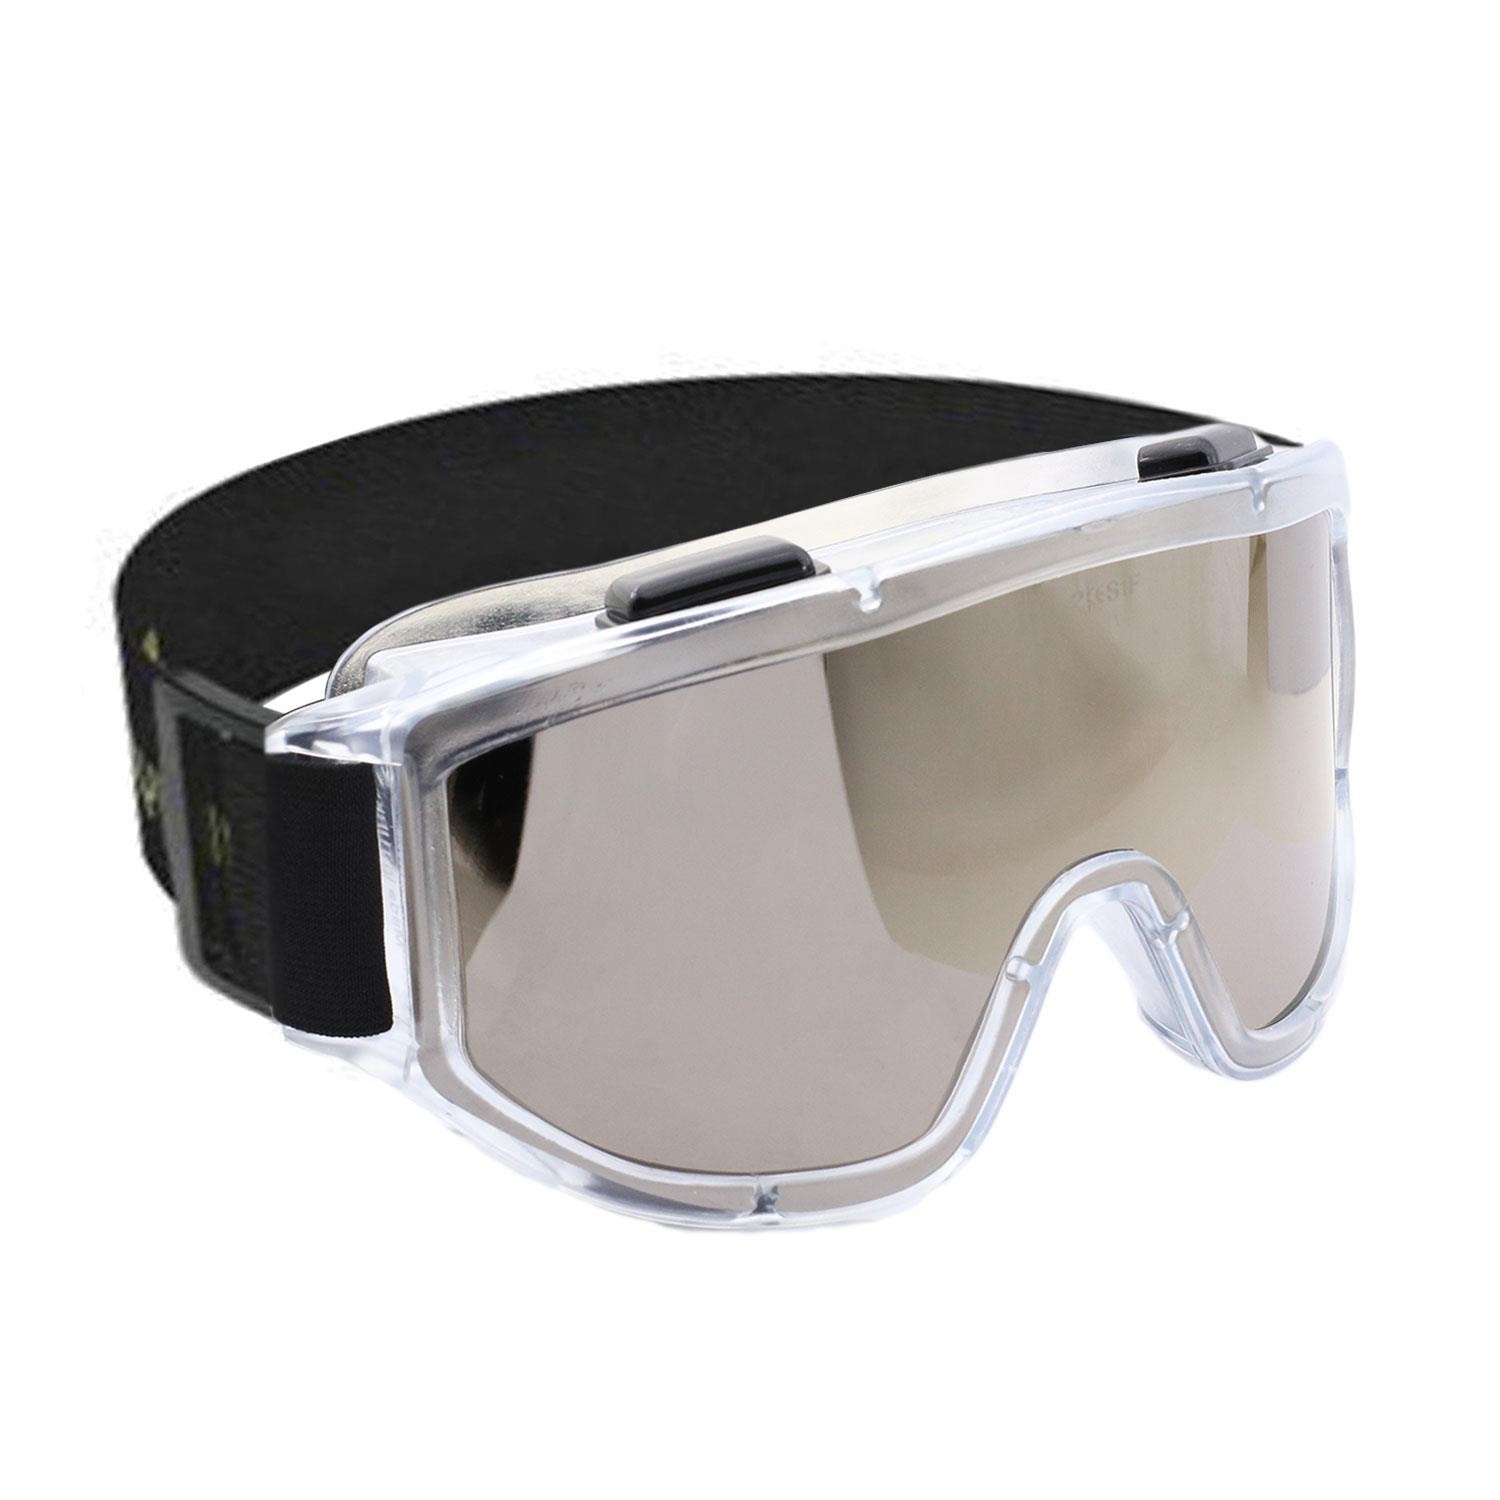 İş Güvenlik Gözlüğü Antifog Buğulanmaz Koruyucu Gözlük Ventilli S550 Gümüş